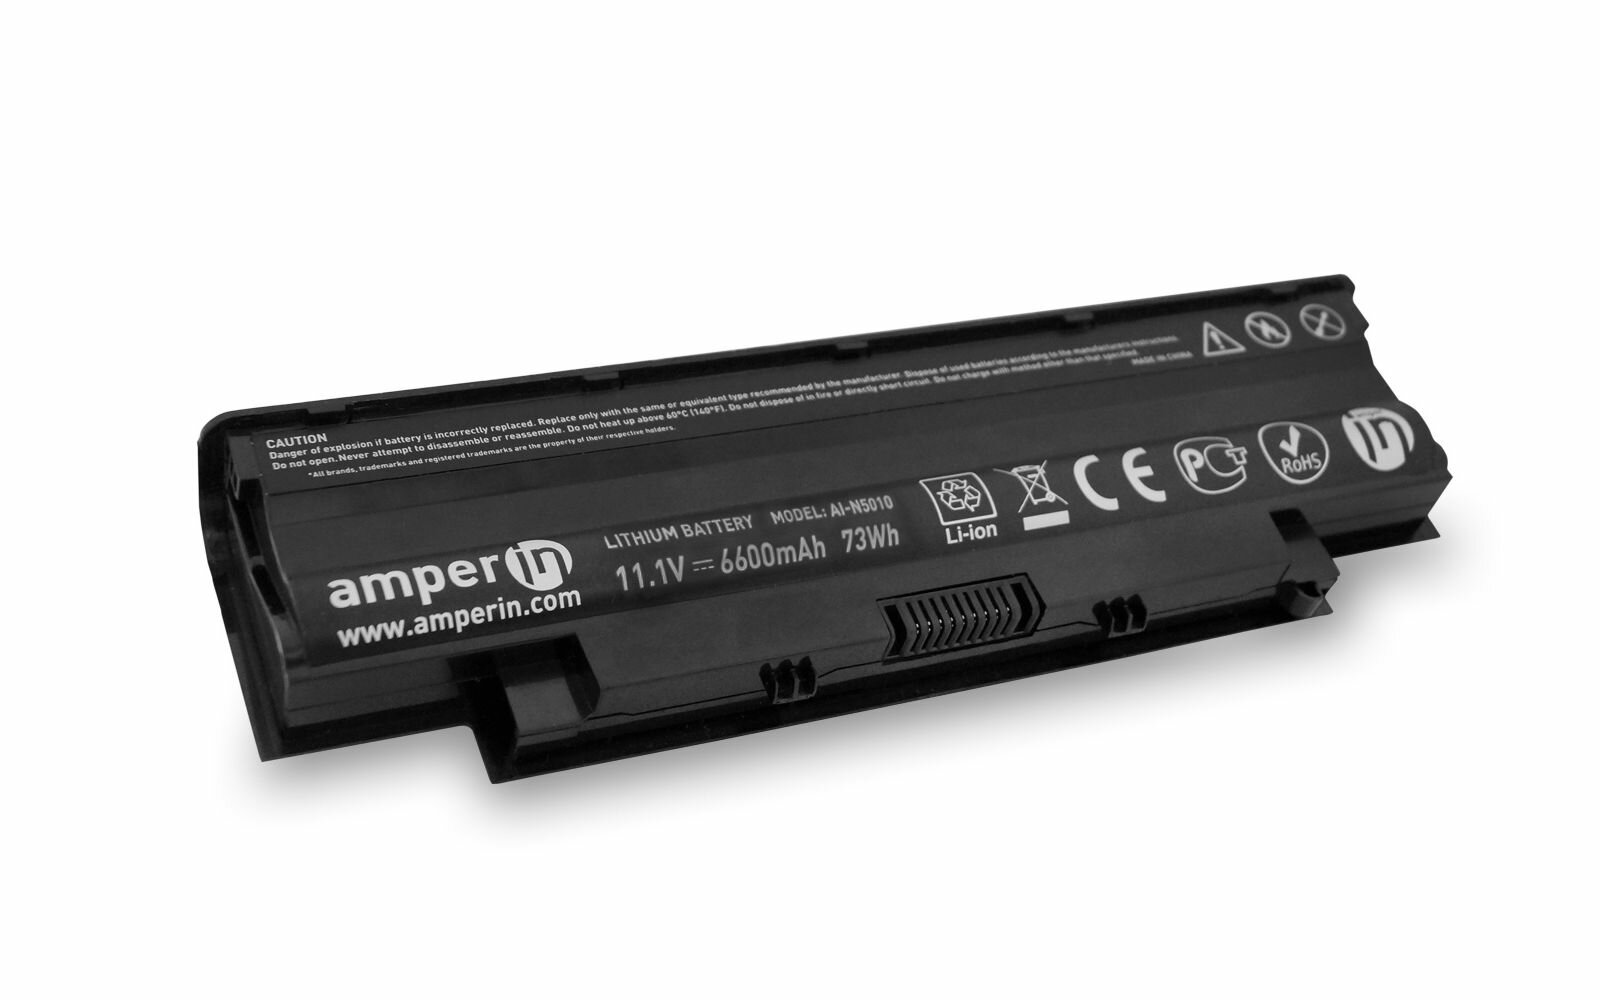 Аккумуляторная батарея усиленная Amperin для ноутбука Dell Inspiron 17R N7010 (6600mAh)